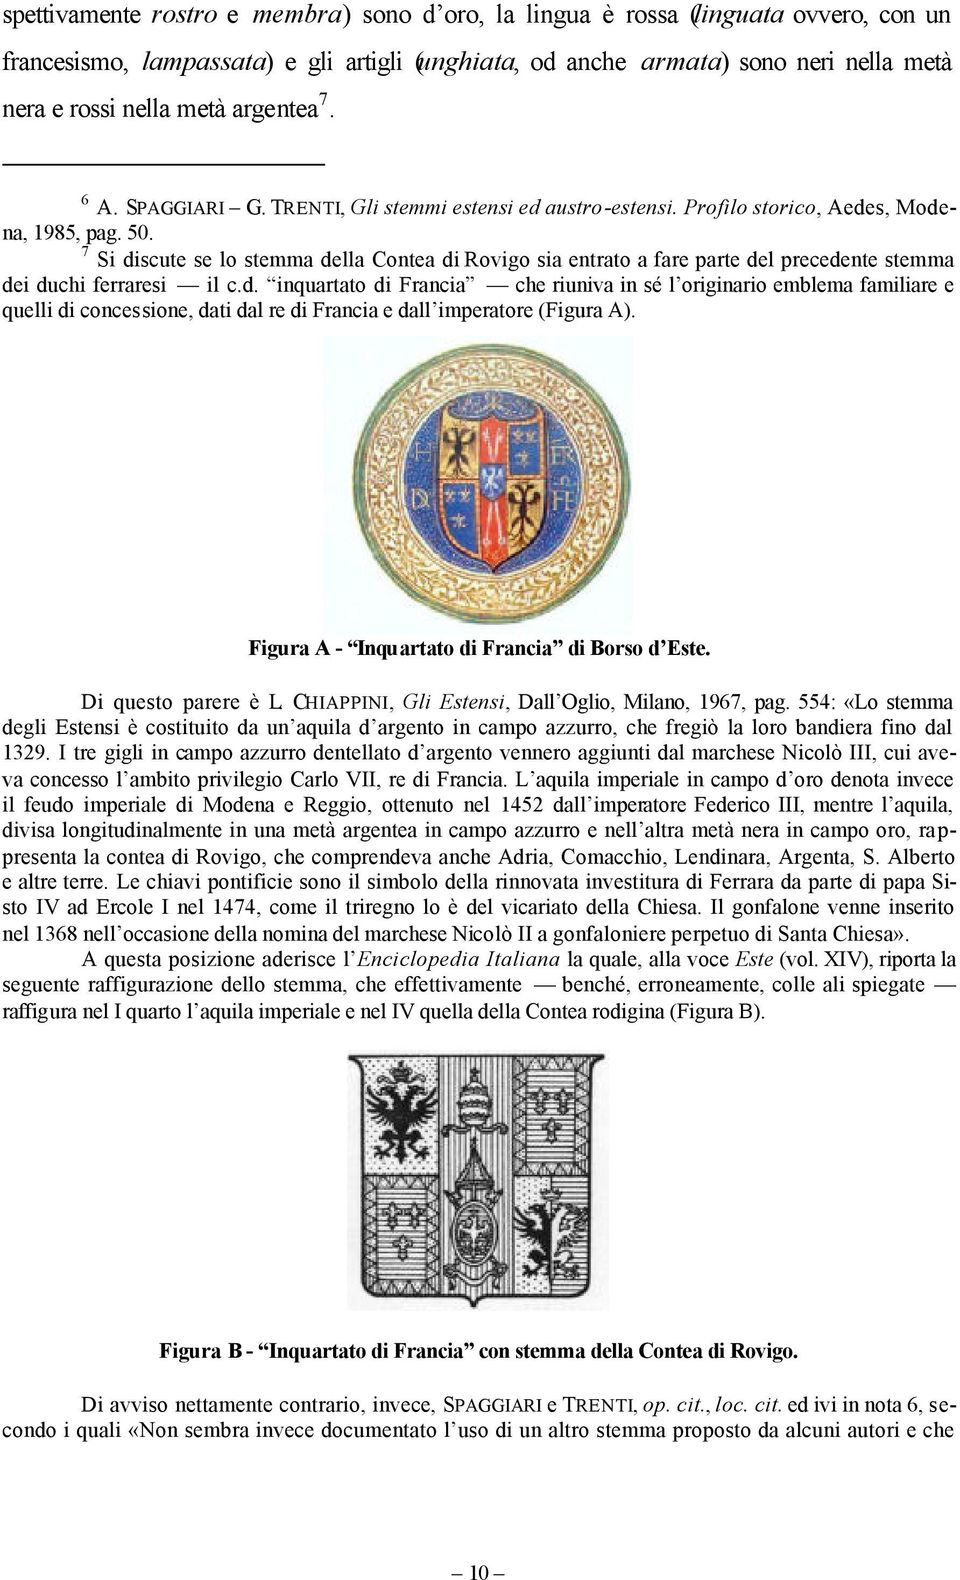 7 Si discute se lo stemma della Contea di Rovigo sia entrato a fare parte del precedente stemma dei duchi ferraresi il c.d. inquartato di Francia che riuniva in sé l originario emblema familiare e quelli di concessione, dati dal re di Francia e dall imperatore (Figura A).